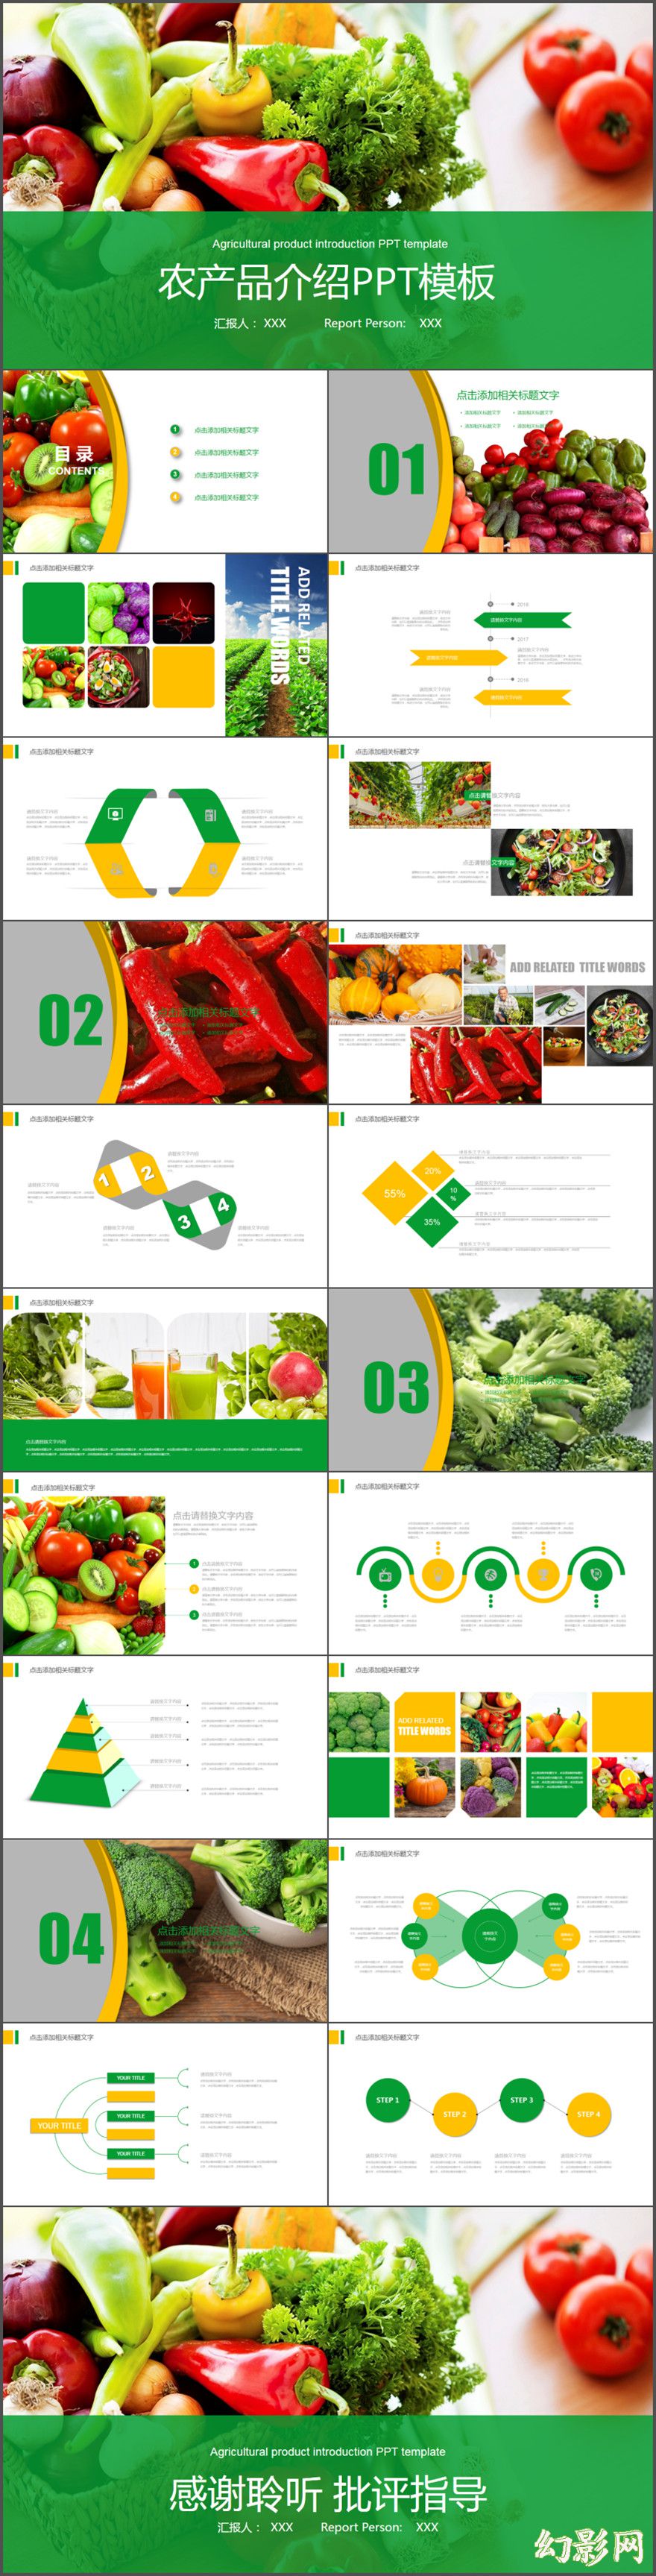 绿色蔬菜水果农产品介绍宣传推广动态PPT模板